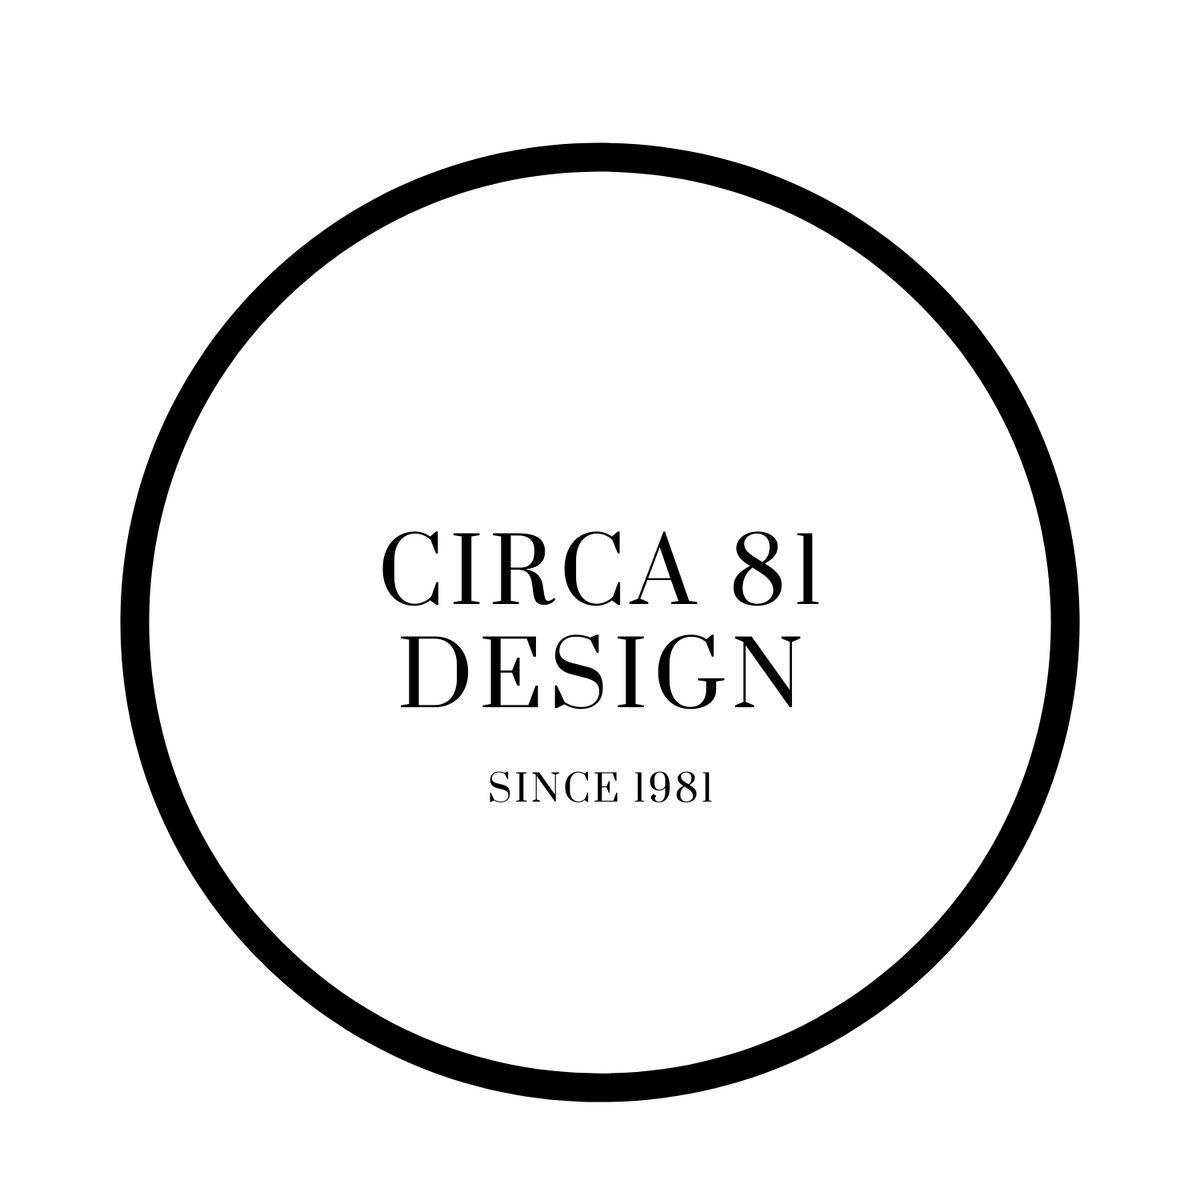 CIRCA81 DESIGN